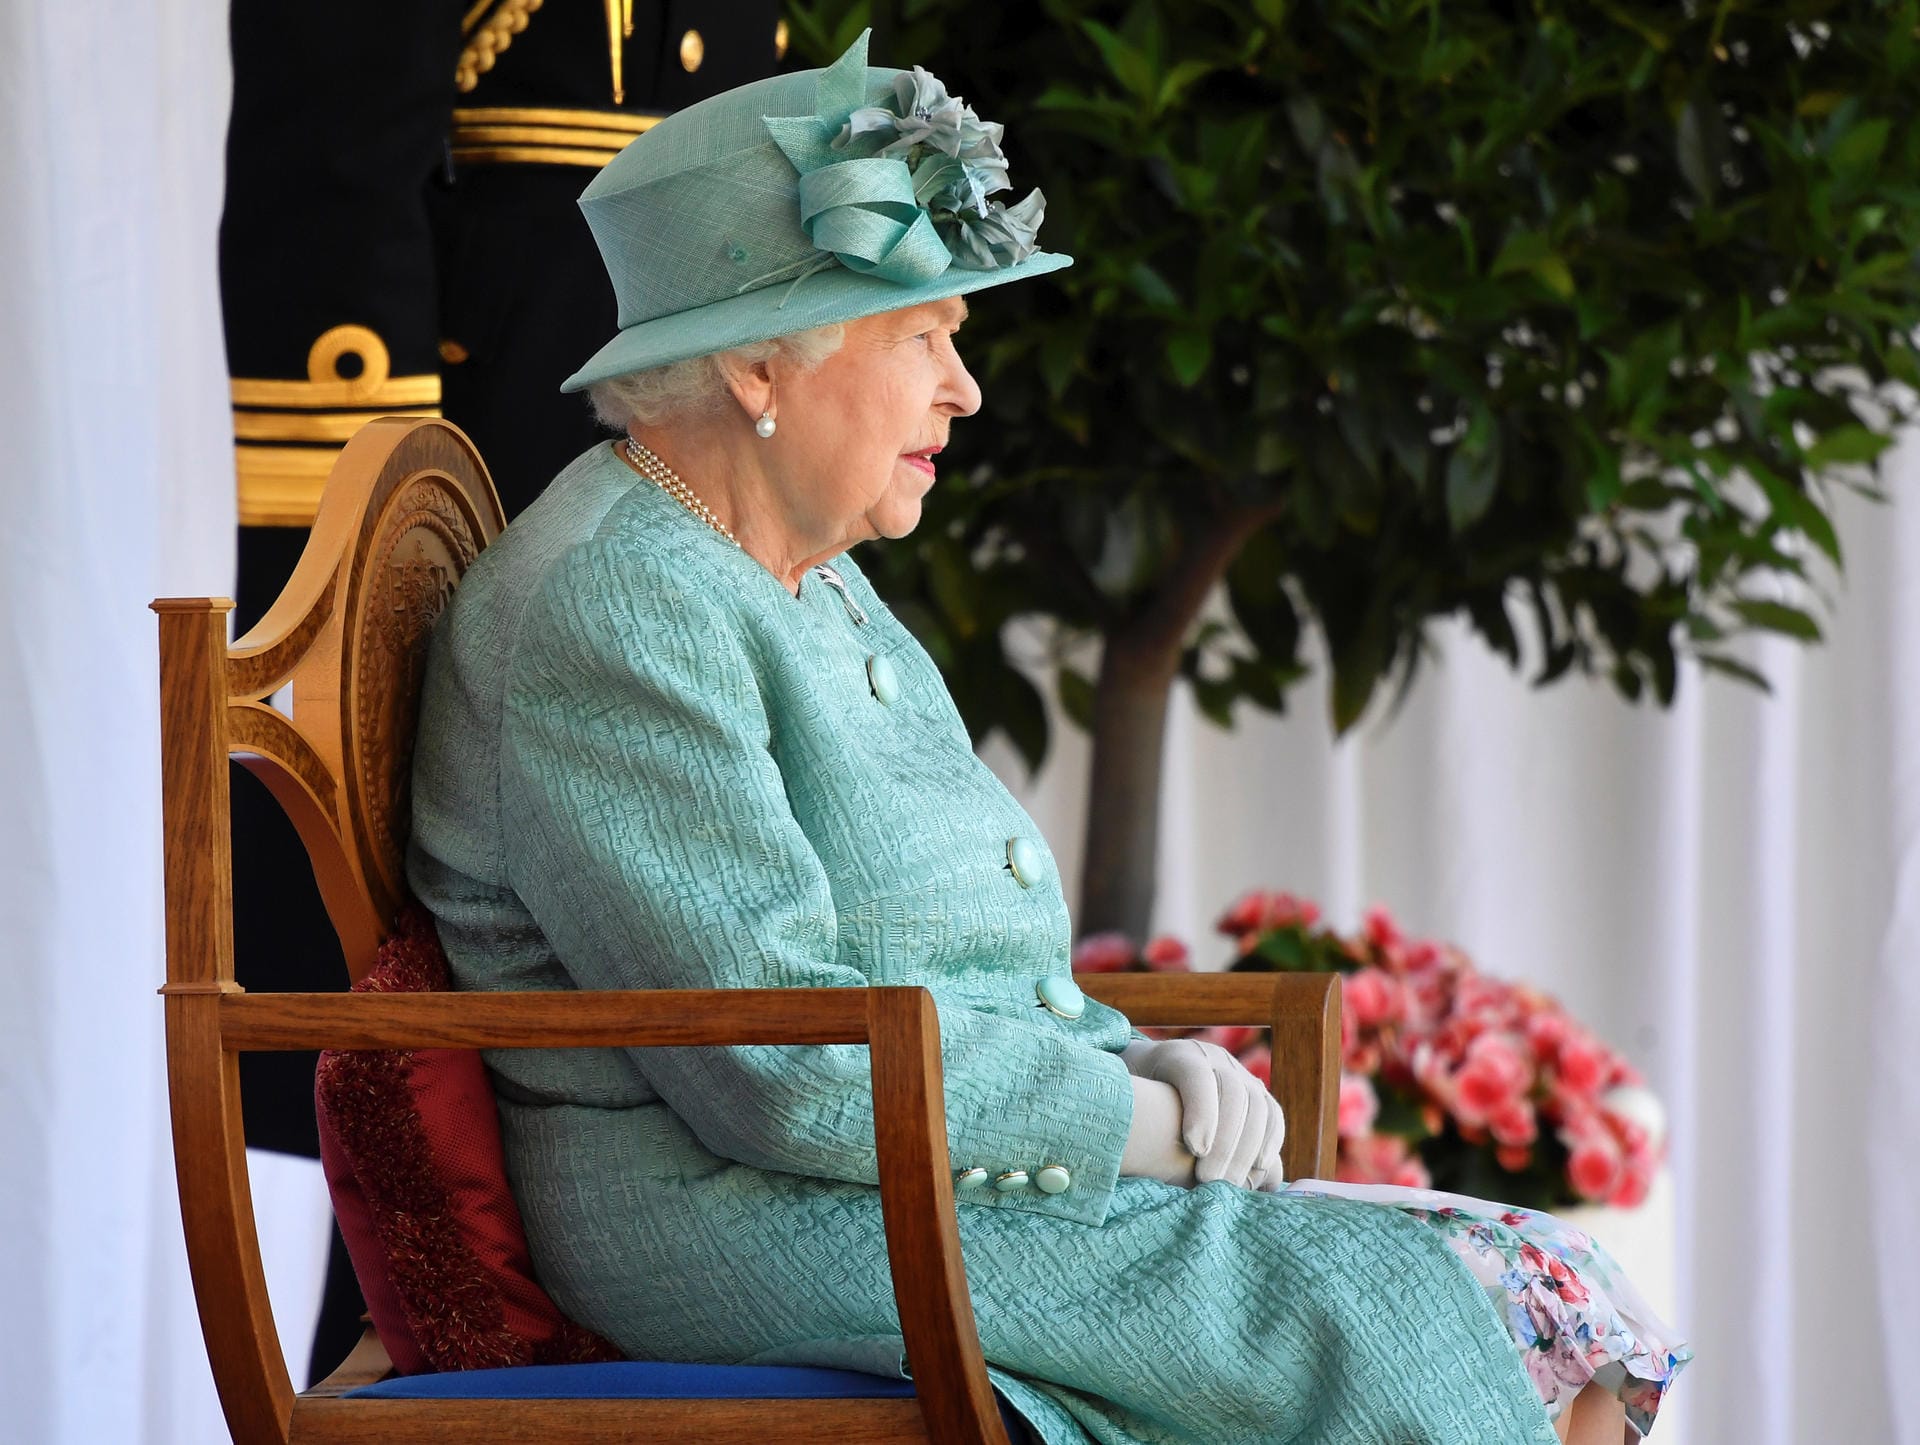 Am 13. Juni feierte die Queen ihren Geburtstag nach: Eigentlich ist ihr Ehrentag im April.